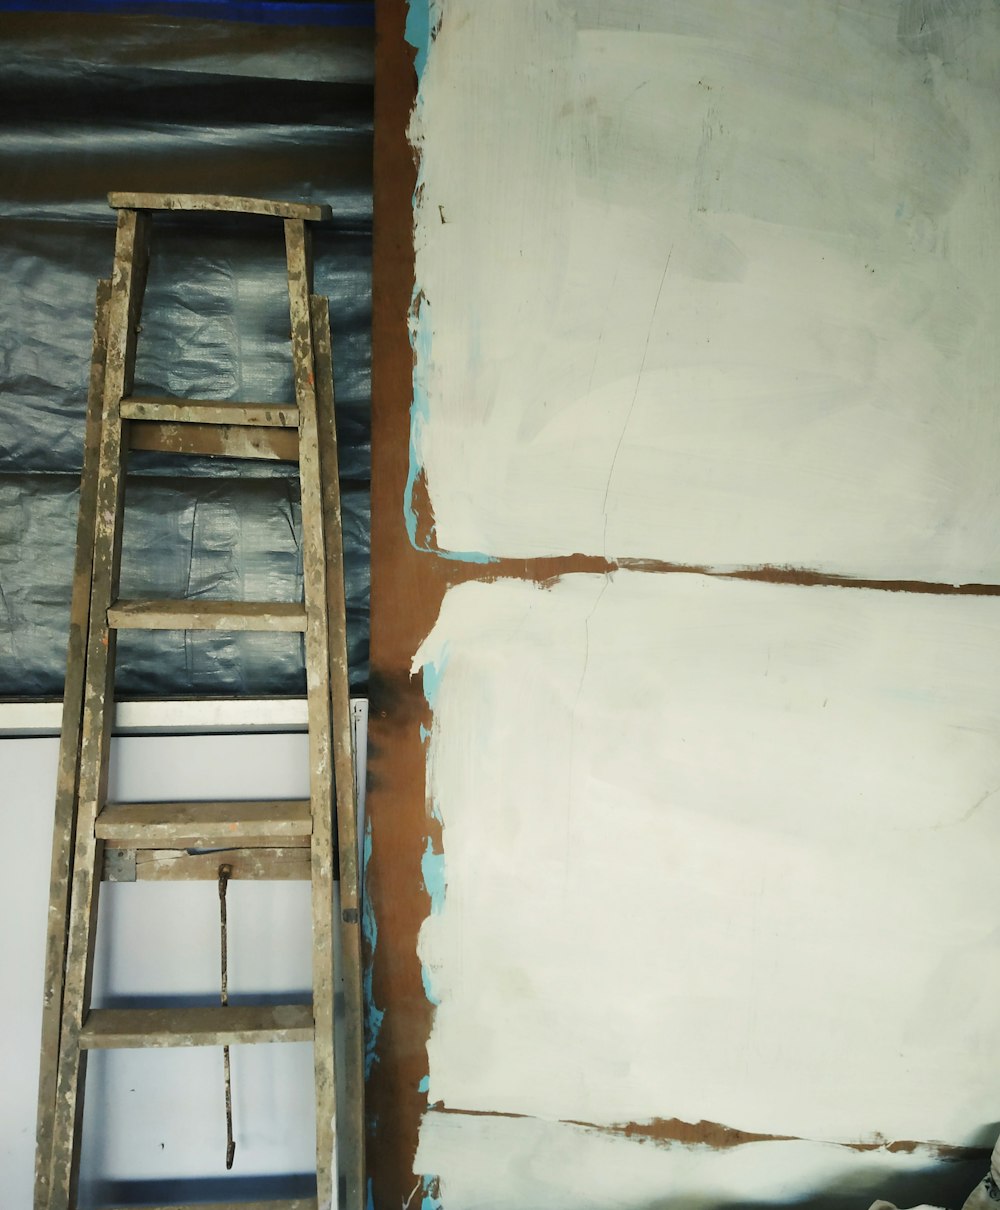 escalera de madera gris apoyada en un gabinete blanco